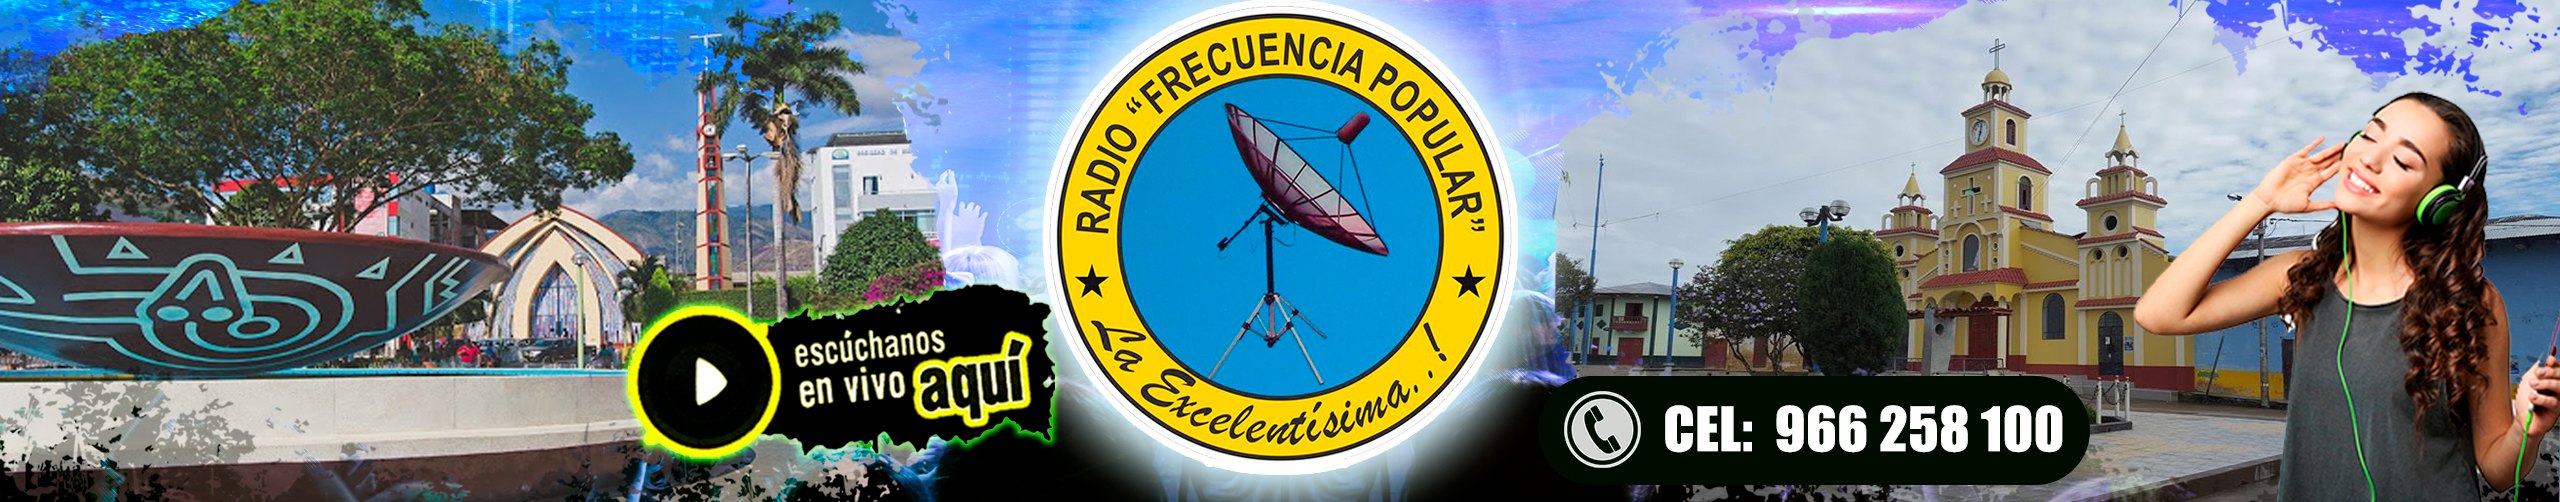 Radio Frecuencia Popular ..::.. La excelentisima